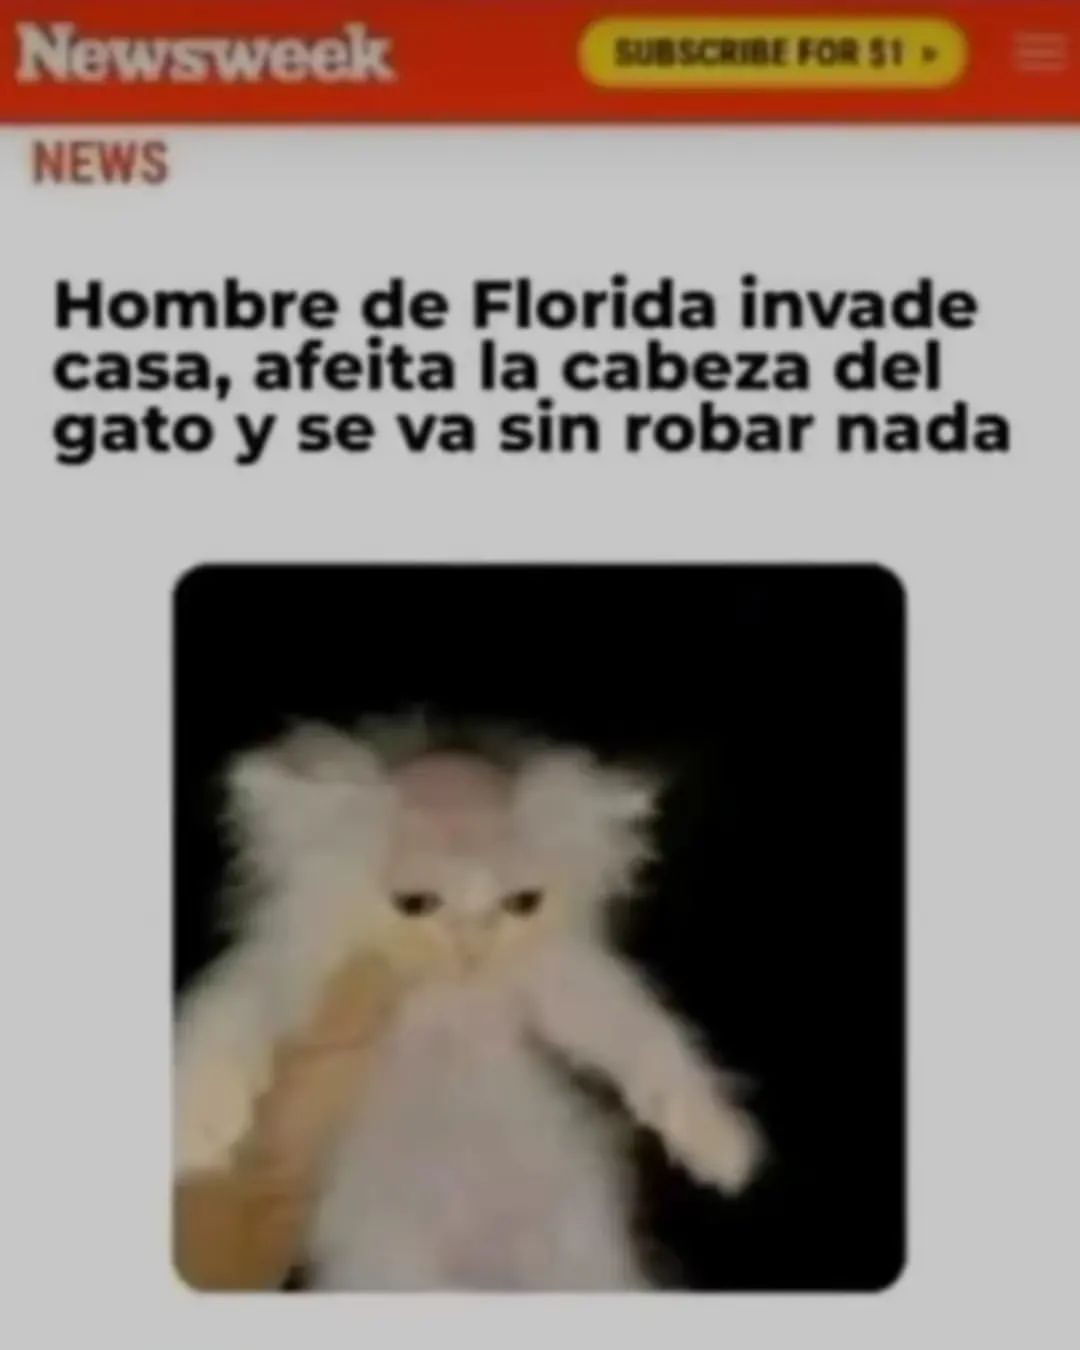 Hombre de Florida invade casa, afeita la cabeza del gato y se va sin robar nada.